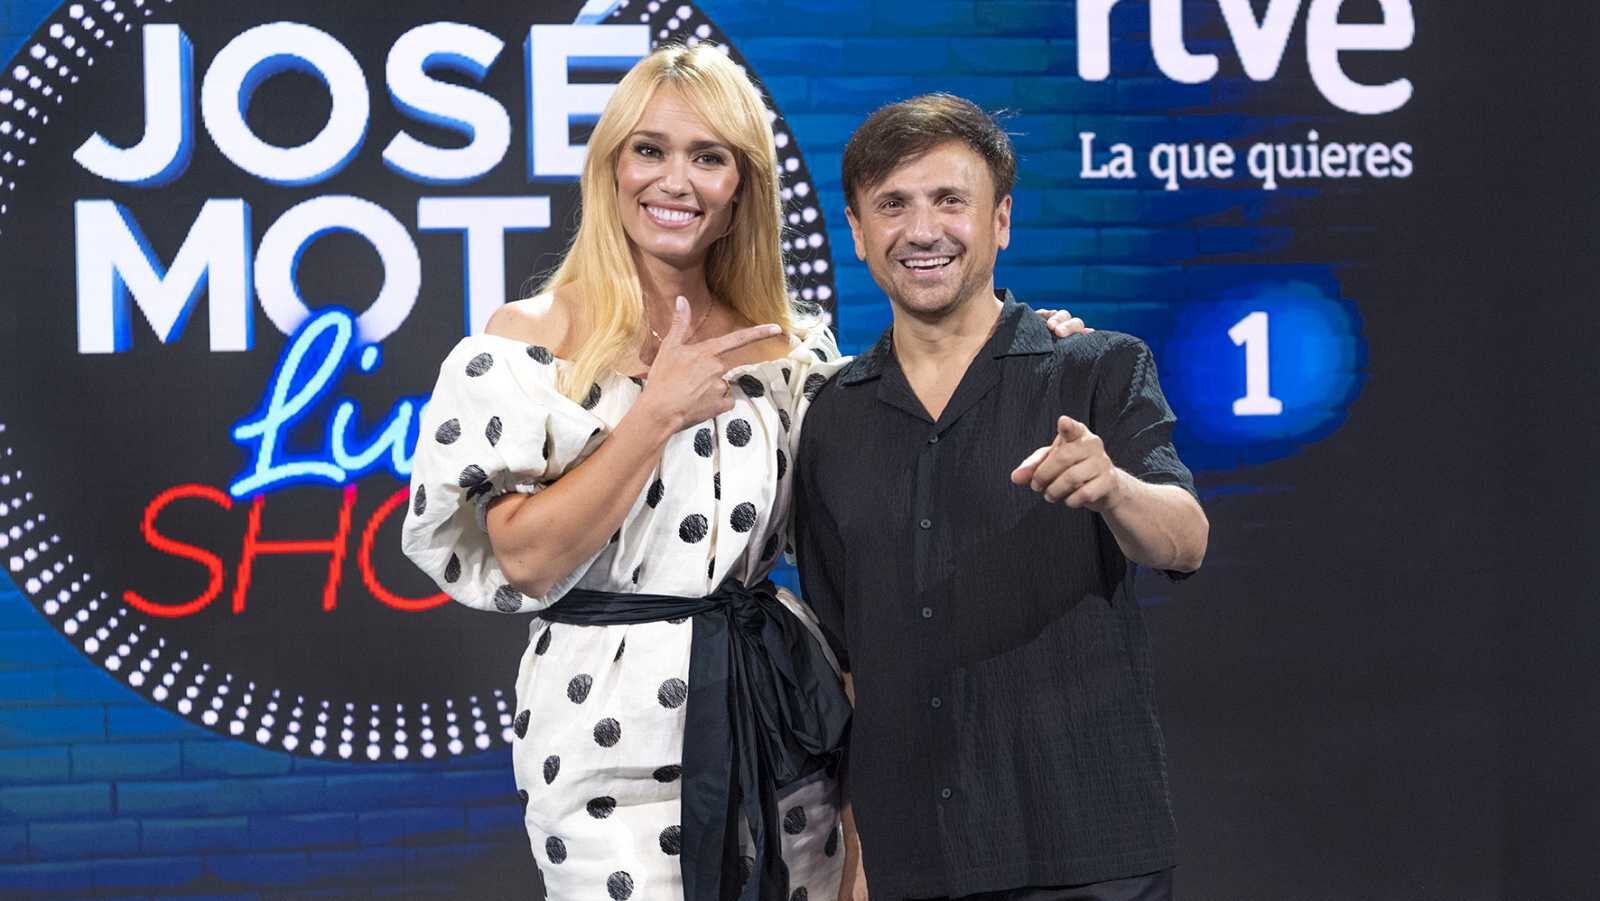 José Mota y Patricia Conde en su nuevo show televisivo